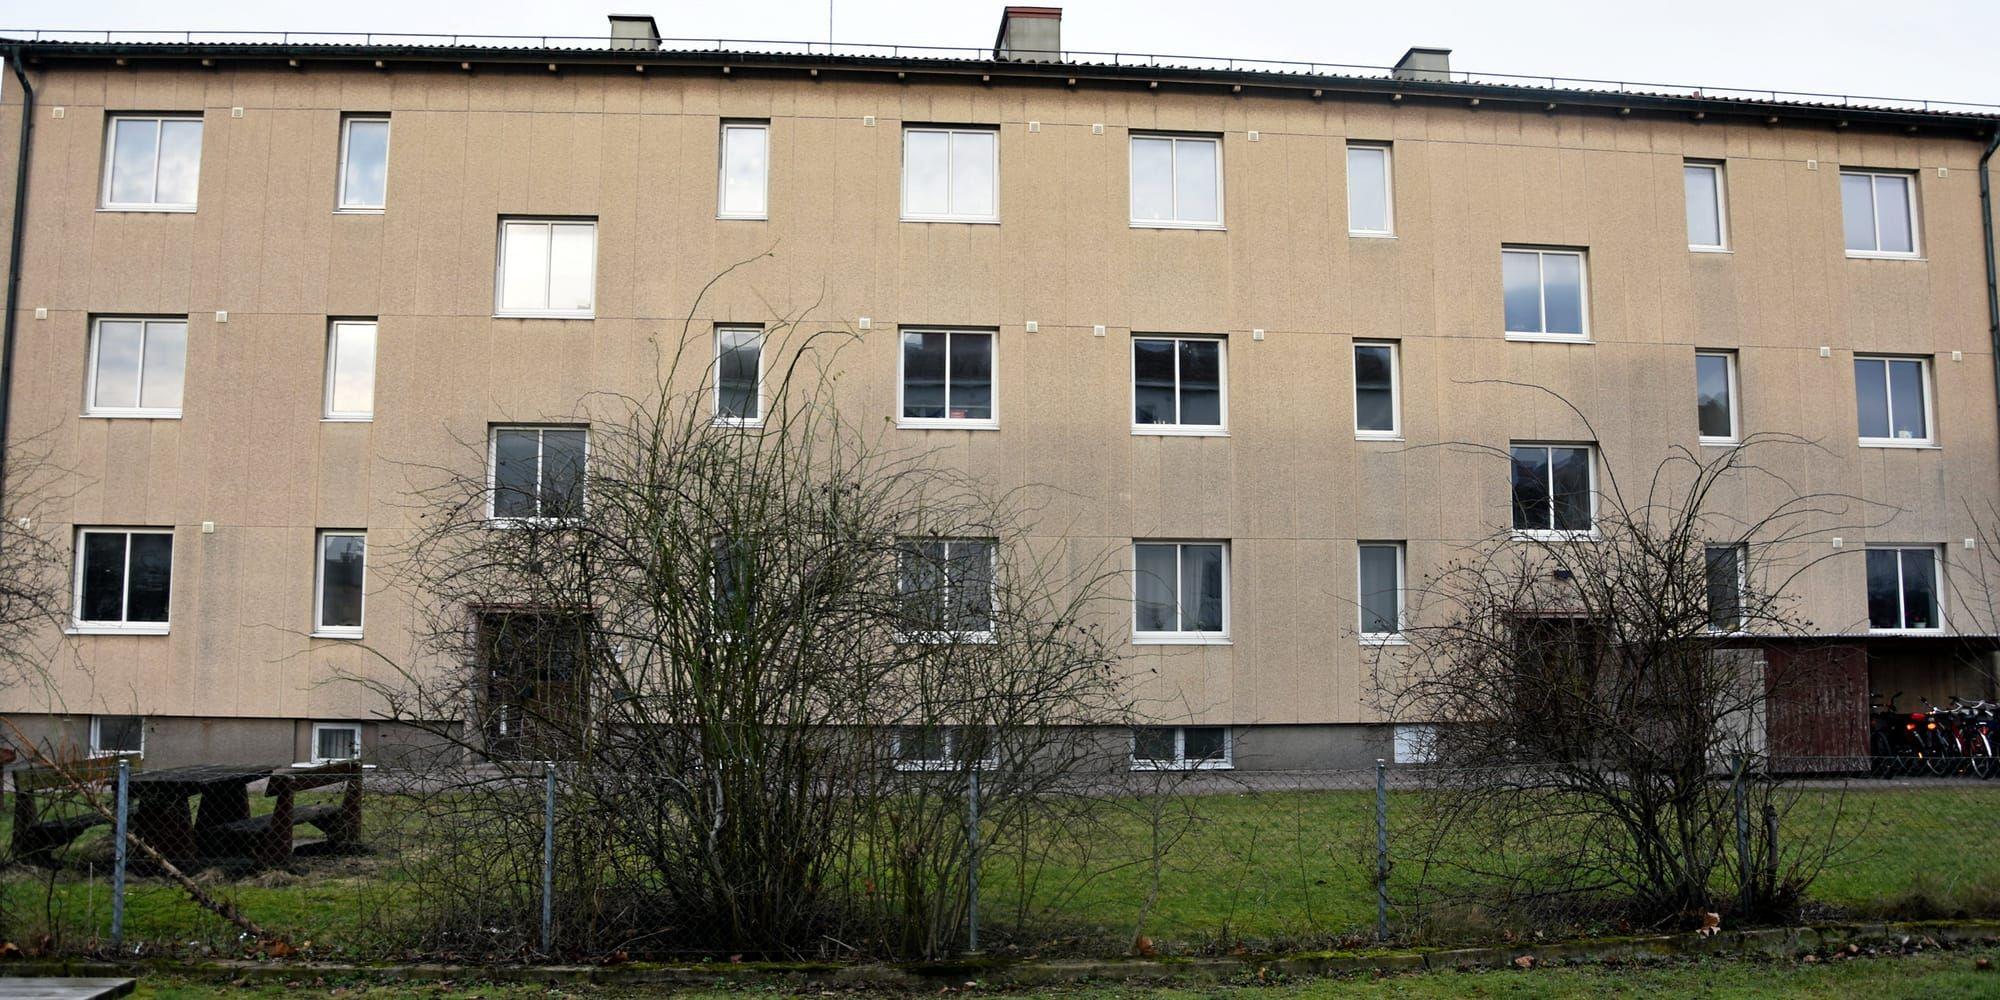 19 studentlägenheter kan försvinna om kommunen fullföljer sina planer att sälja sin fastighet på Hertig Knutsgatan.